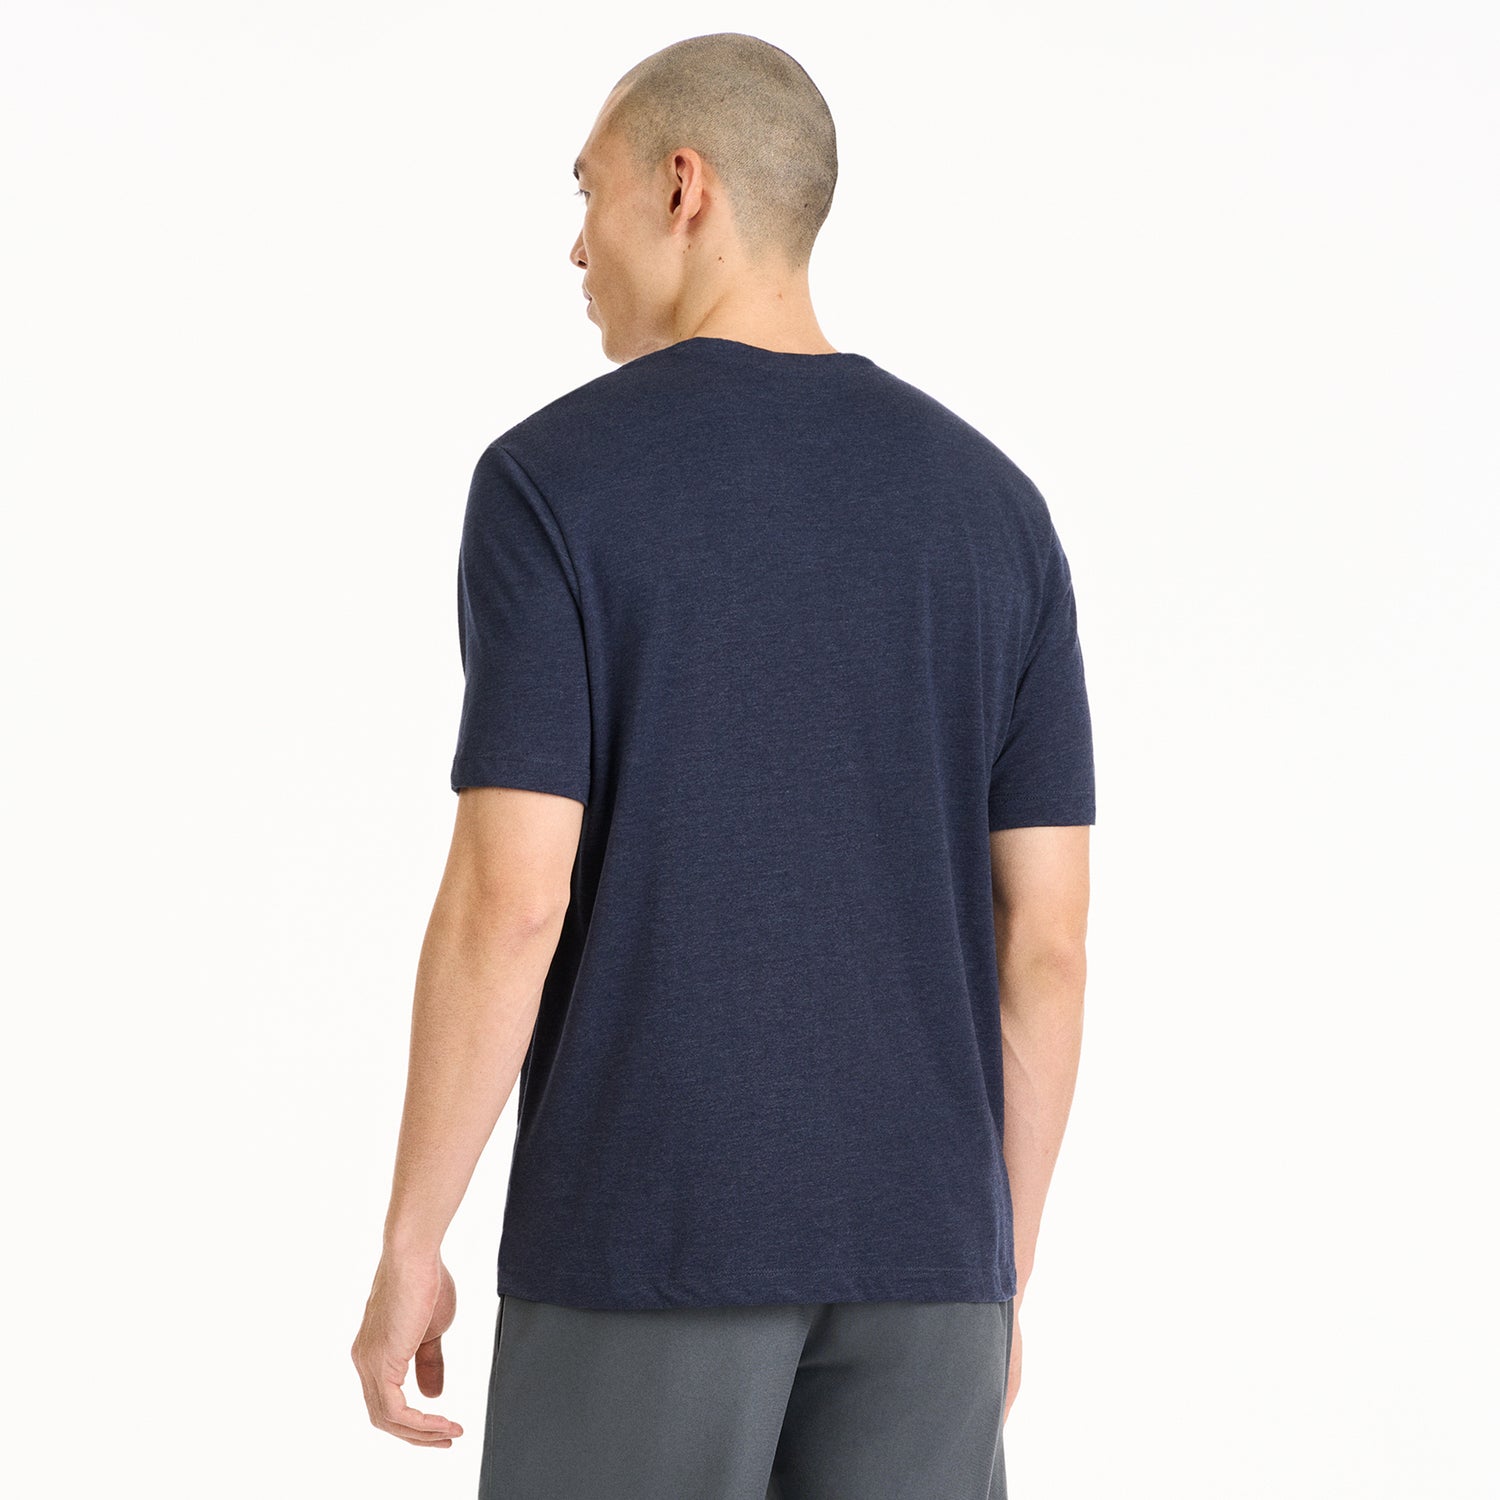 Essential V-Neck Heusen Sleeve Tee Shield Basic Van Shirt Short – Stain